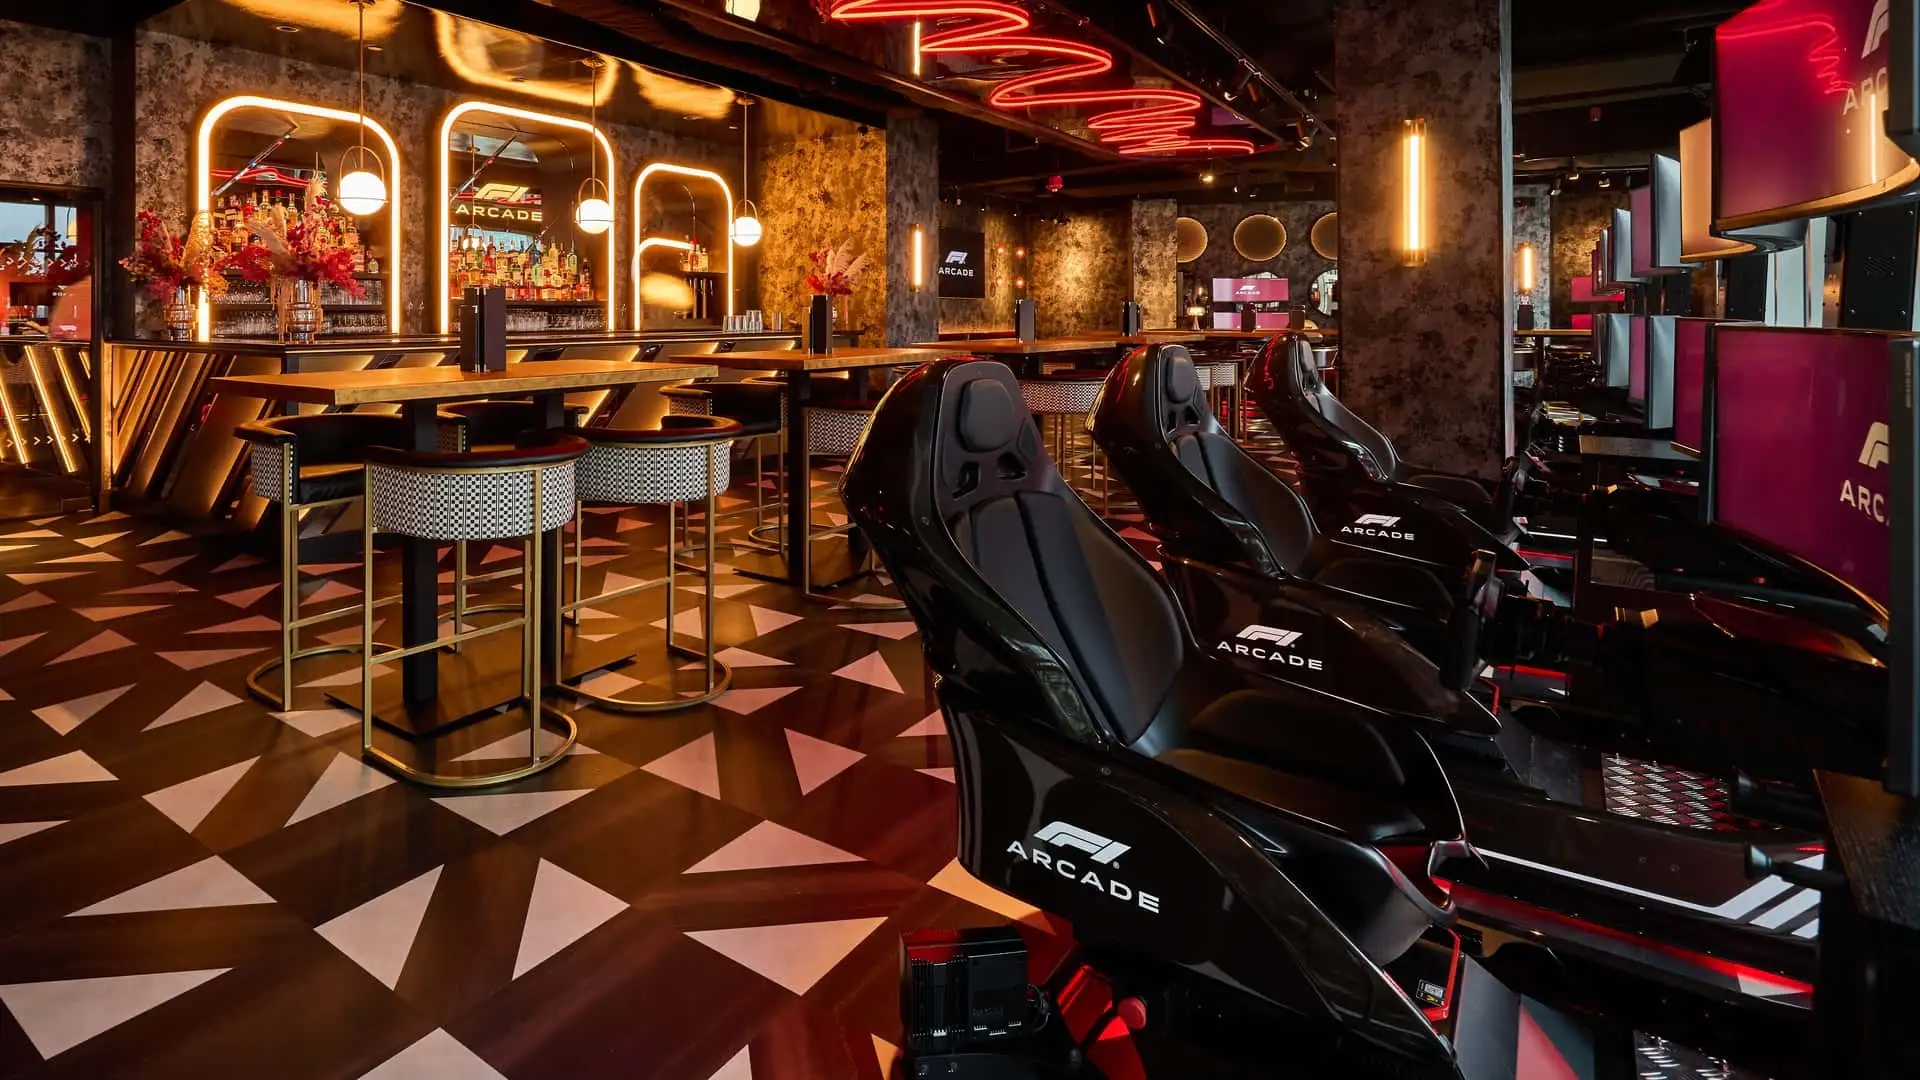 El restaurante F1 Arcade ha abierto sus puertas en Boston y ofrece deliciosa comida y un paseo al volante de un Fórmula 1.